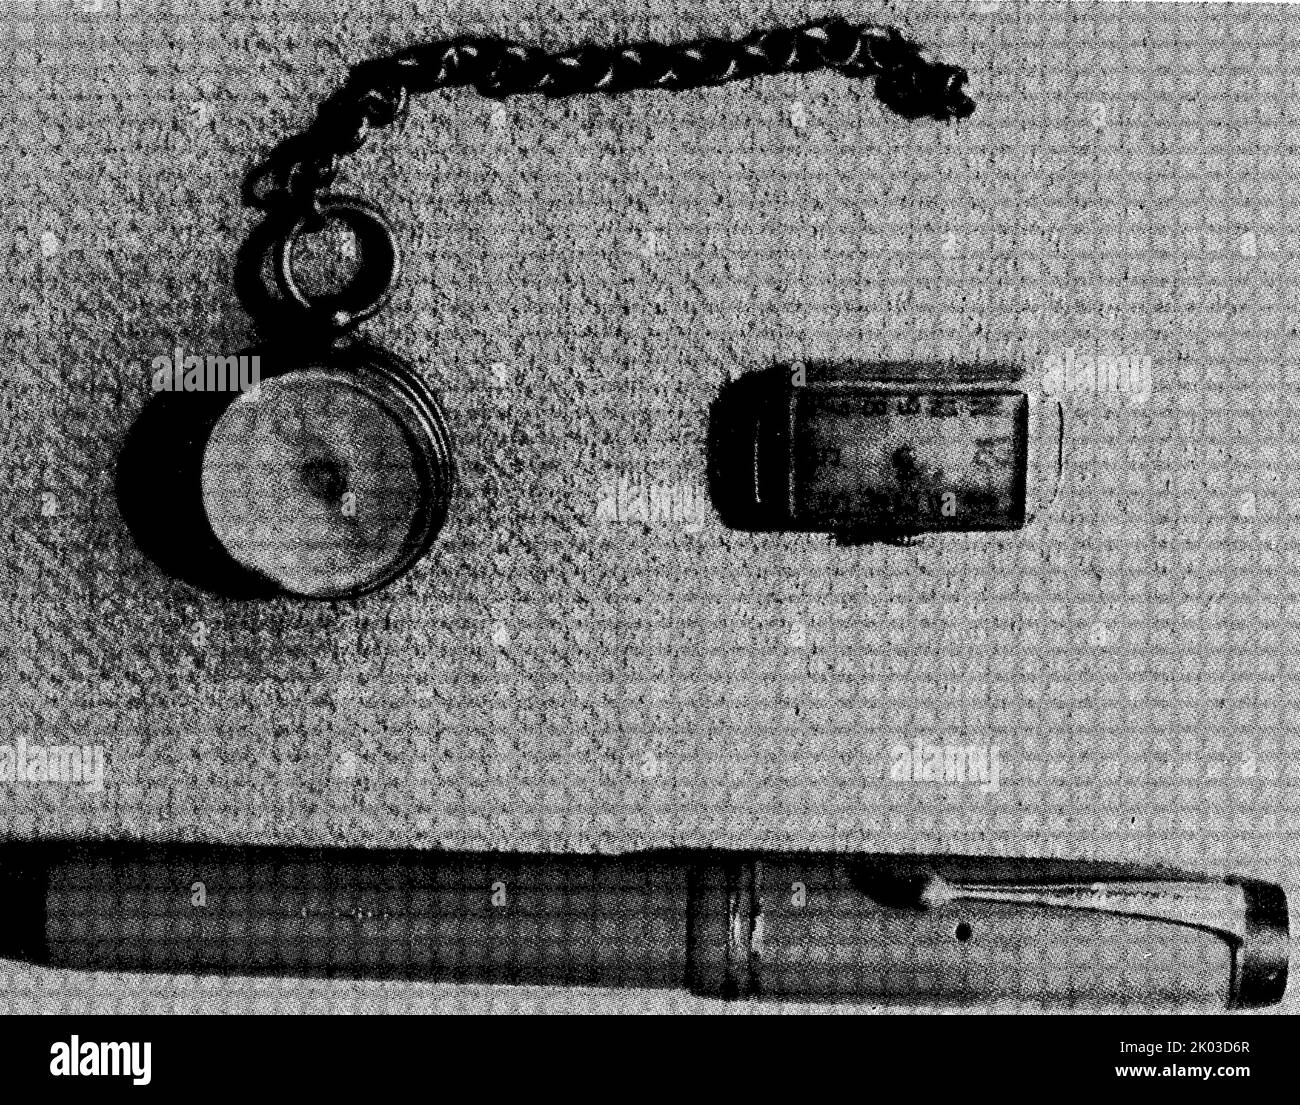 L'immagine mostra la bussola, l'orologio e la penna utilizzati da Ren Bishi durante la lunga marcia. Ren Bishi era un leader militare e politico nel primo Partito comunista cinese. Nei primi anni '1930s, Foto Stock